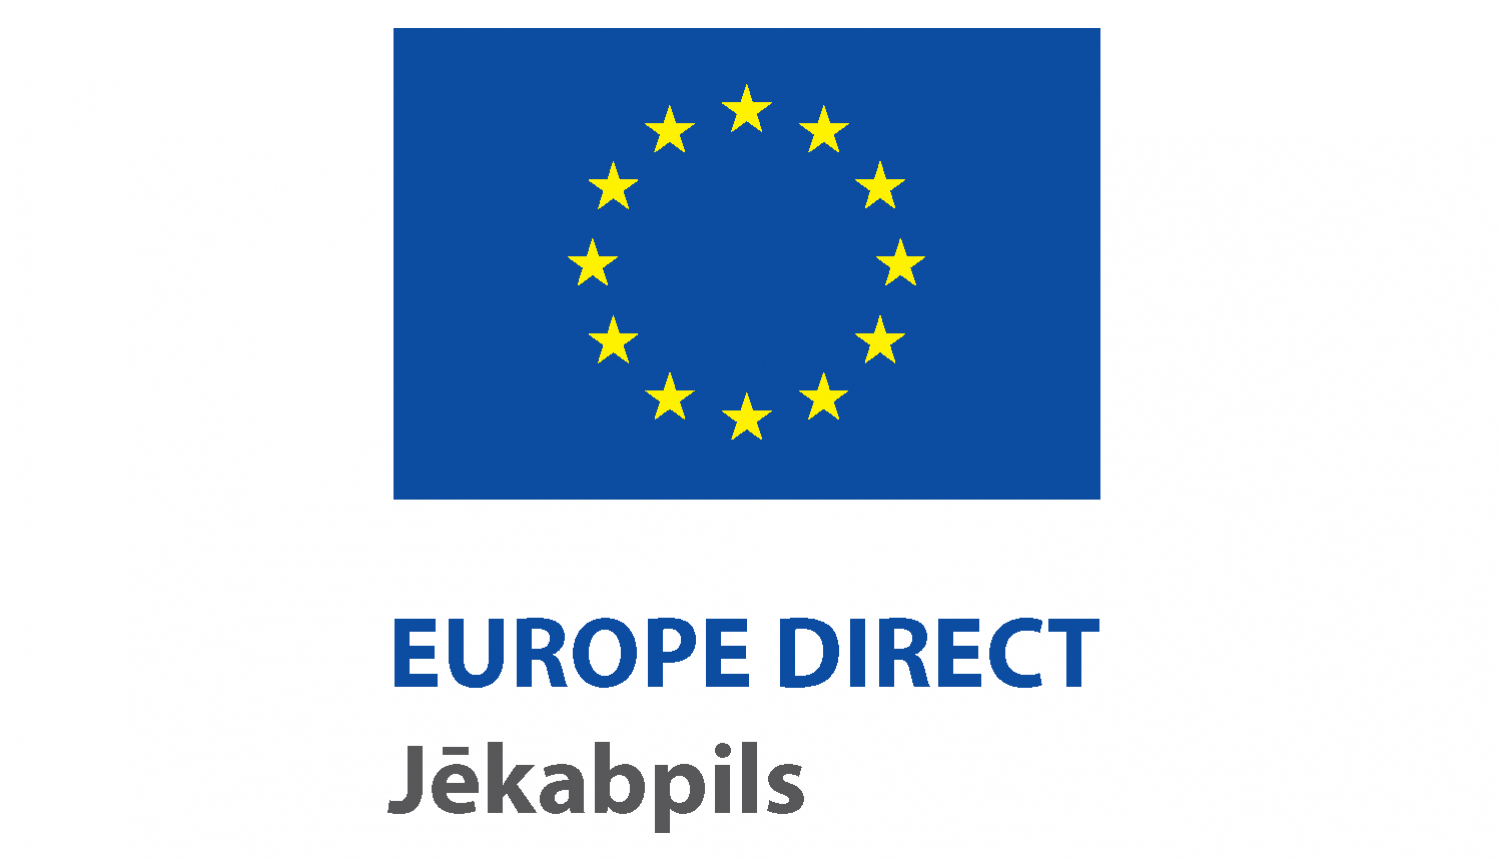 Europe direct logo